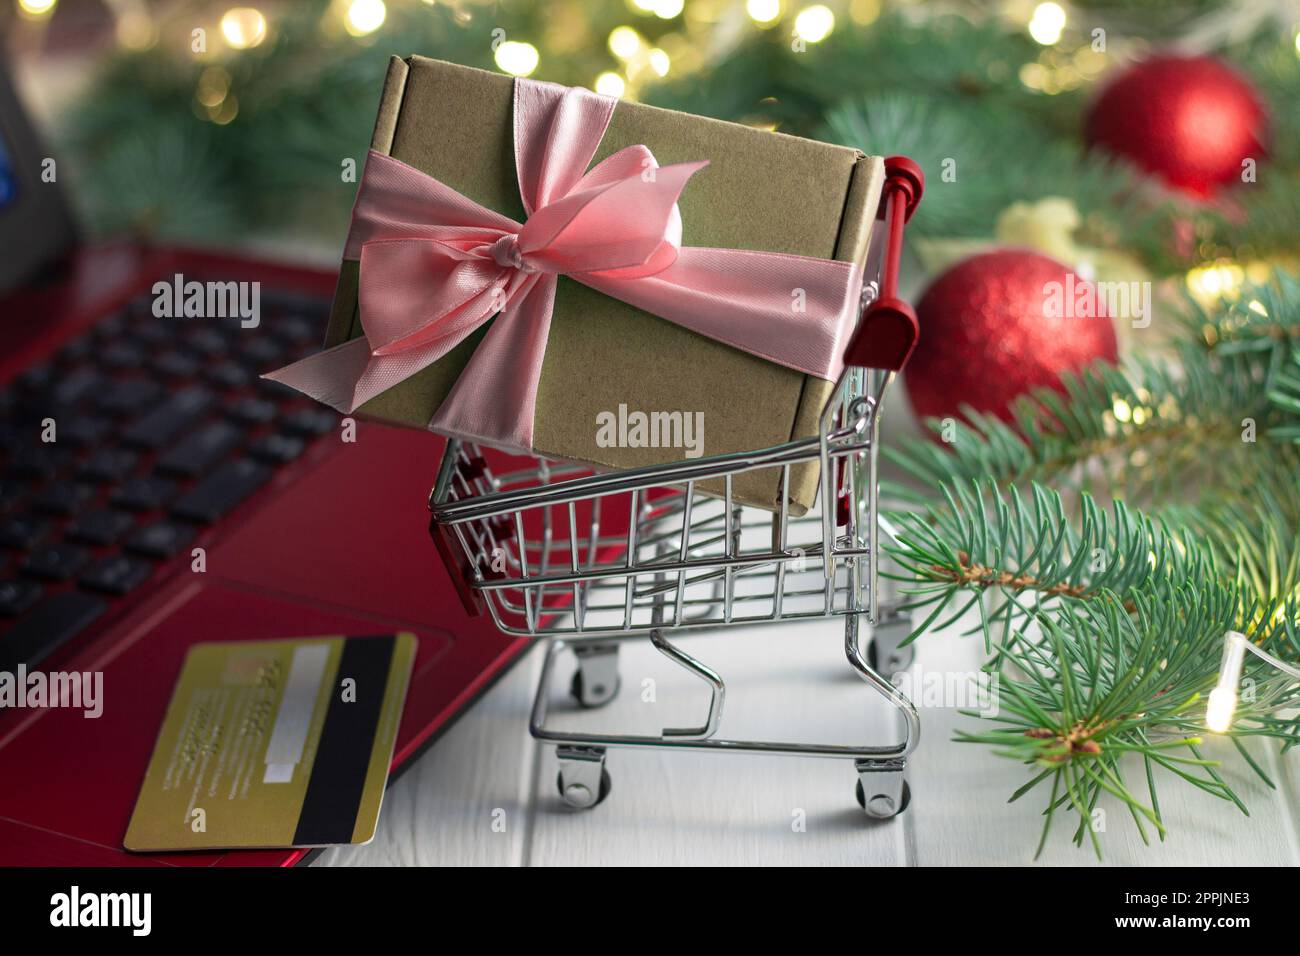 Einkaufswagen mit Geschenk, Tastatur mit Laptop, Kreditkarte, Zweigen eines Weihnachtsbaums, Bälle auf weißem Hintergrund Stockfoto